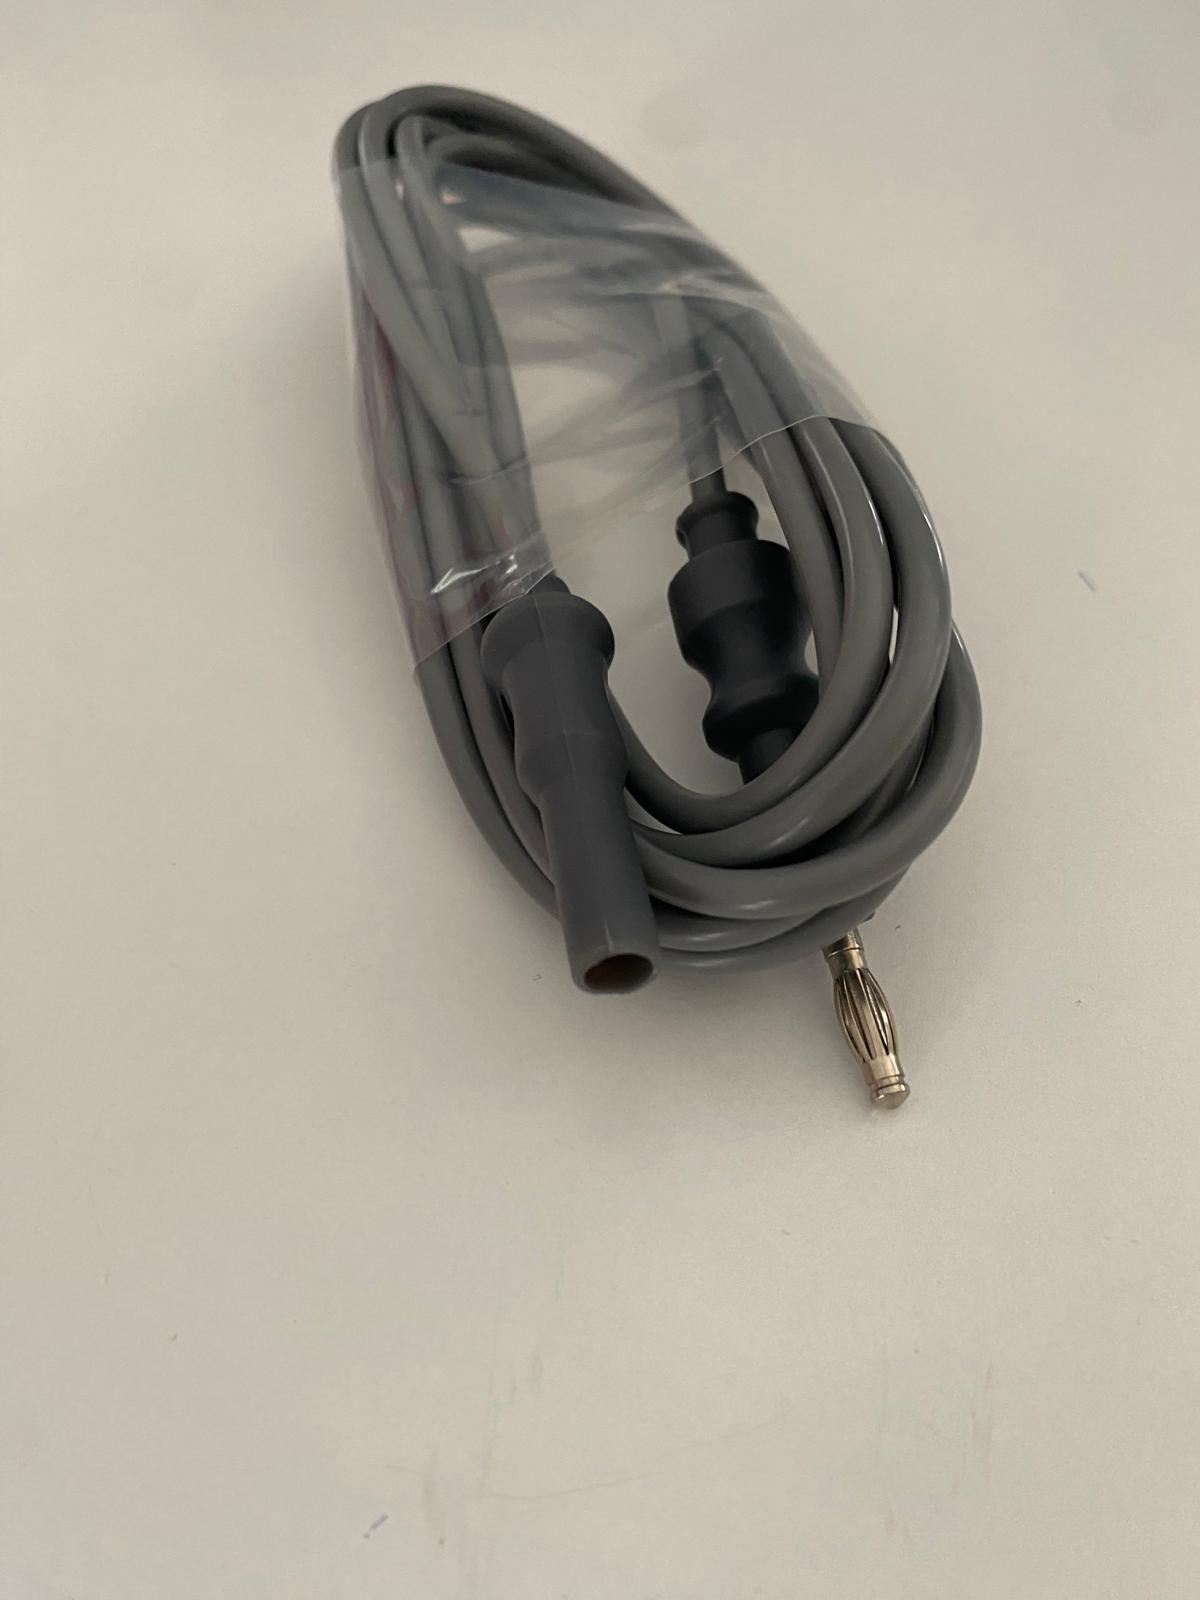 Monopolar Kablo - Endoskopik